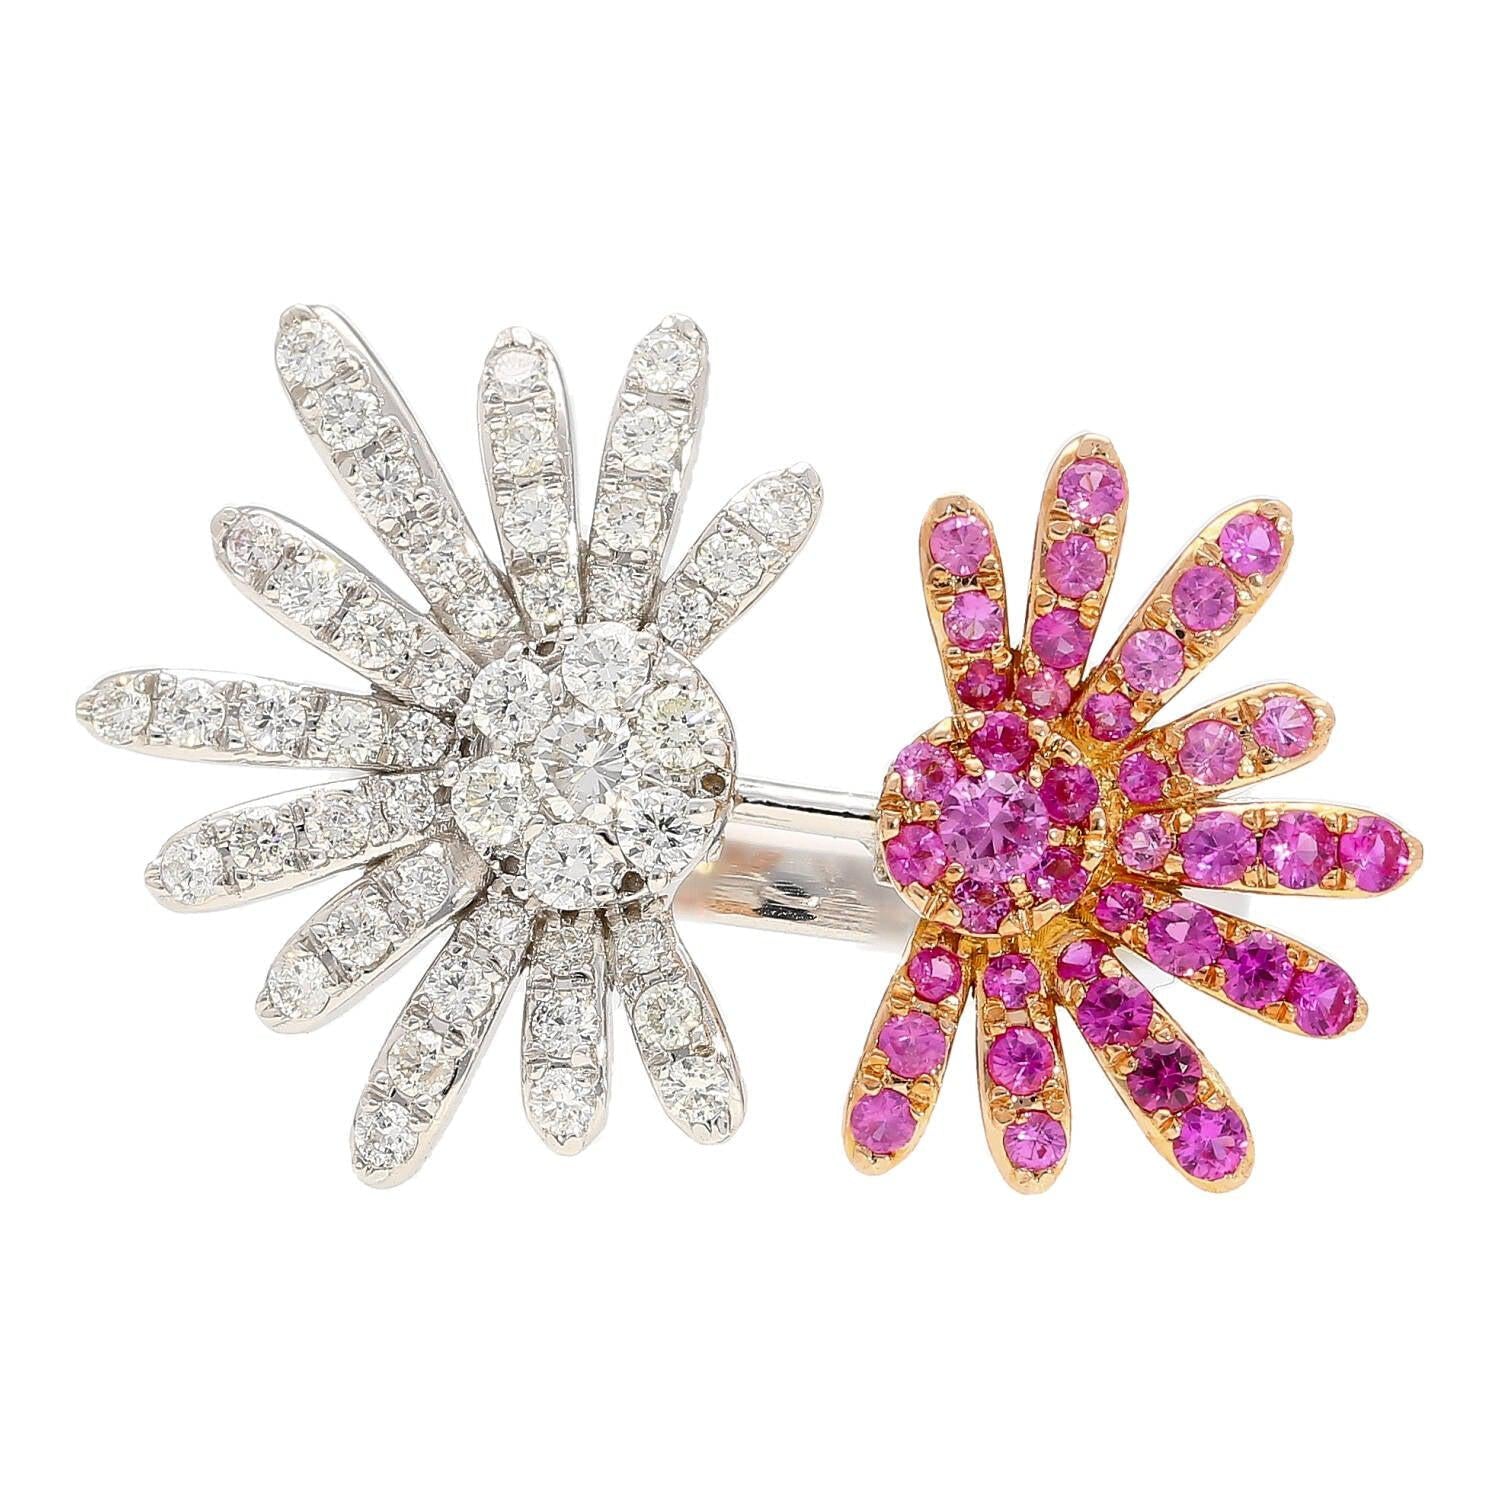 Pink-Sapphire-and-Diamond-Flower-Motif-Open-Toi-Et-Moi-Ring-in-18K-White-Gold-Rings-2.jpg